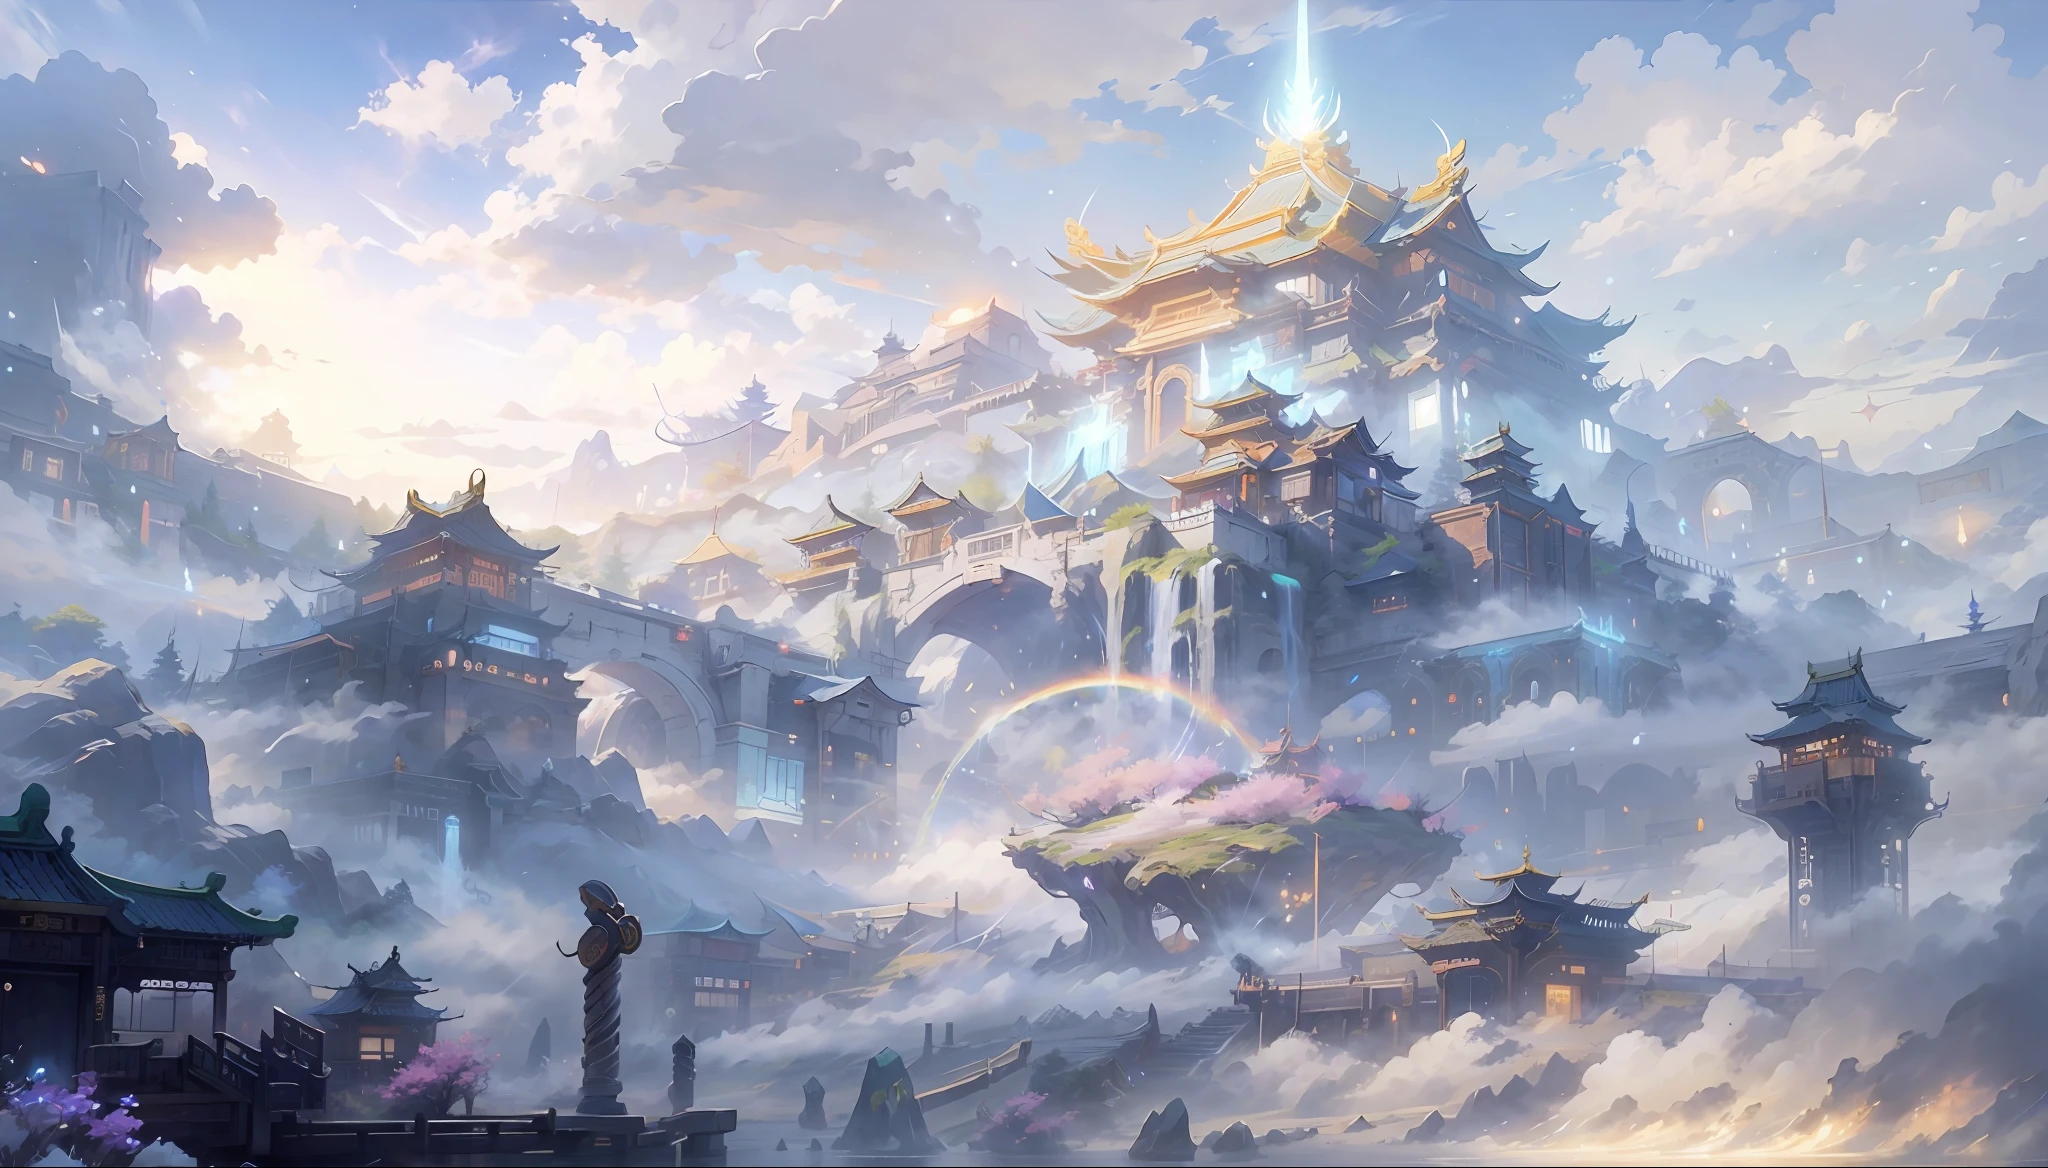 céleste，Île immortelle，Le royaume du ciel，Tons bleu-blanc，style science-fiction，Architecture ancienne chinoise